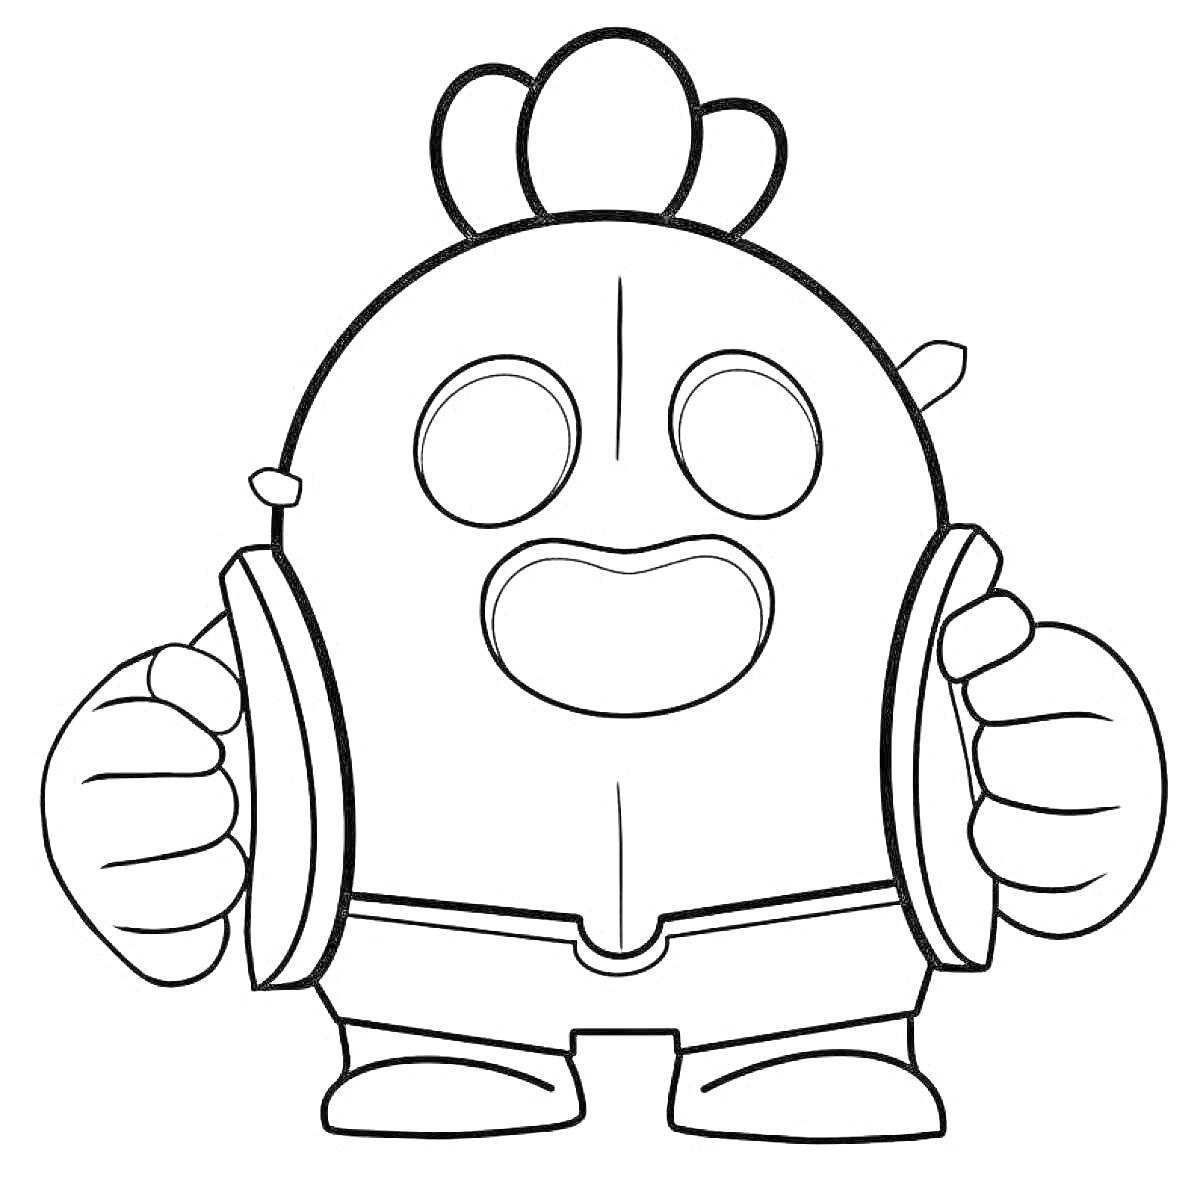 Раскраска персонаж из игры Браво Старс - Честер с большой улыбкой и большими руками